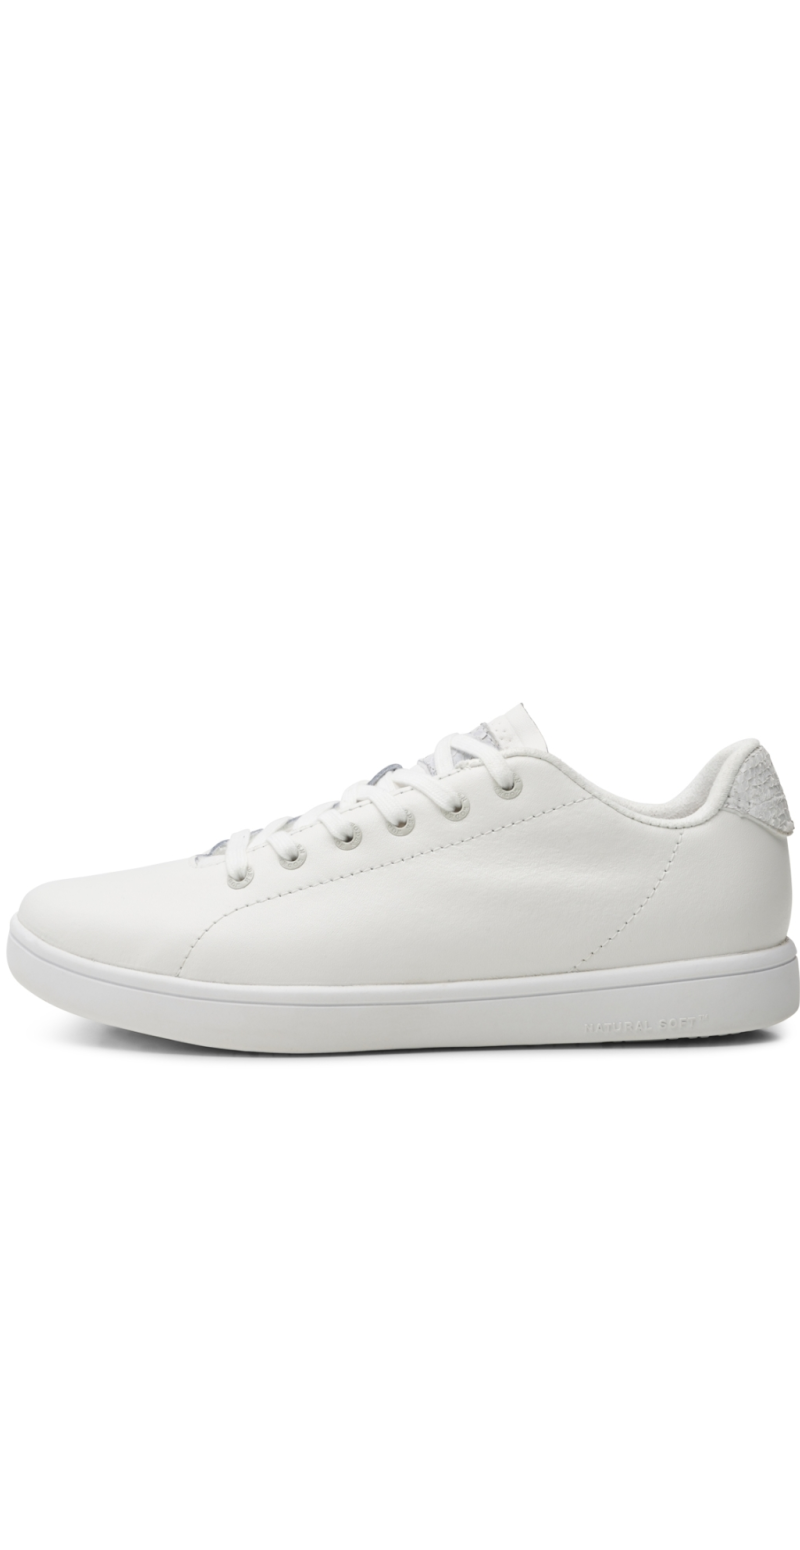 Elegante sneakers hvid